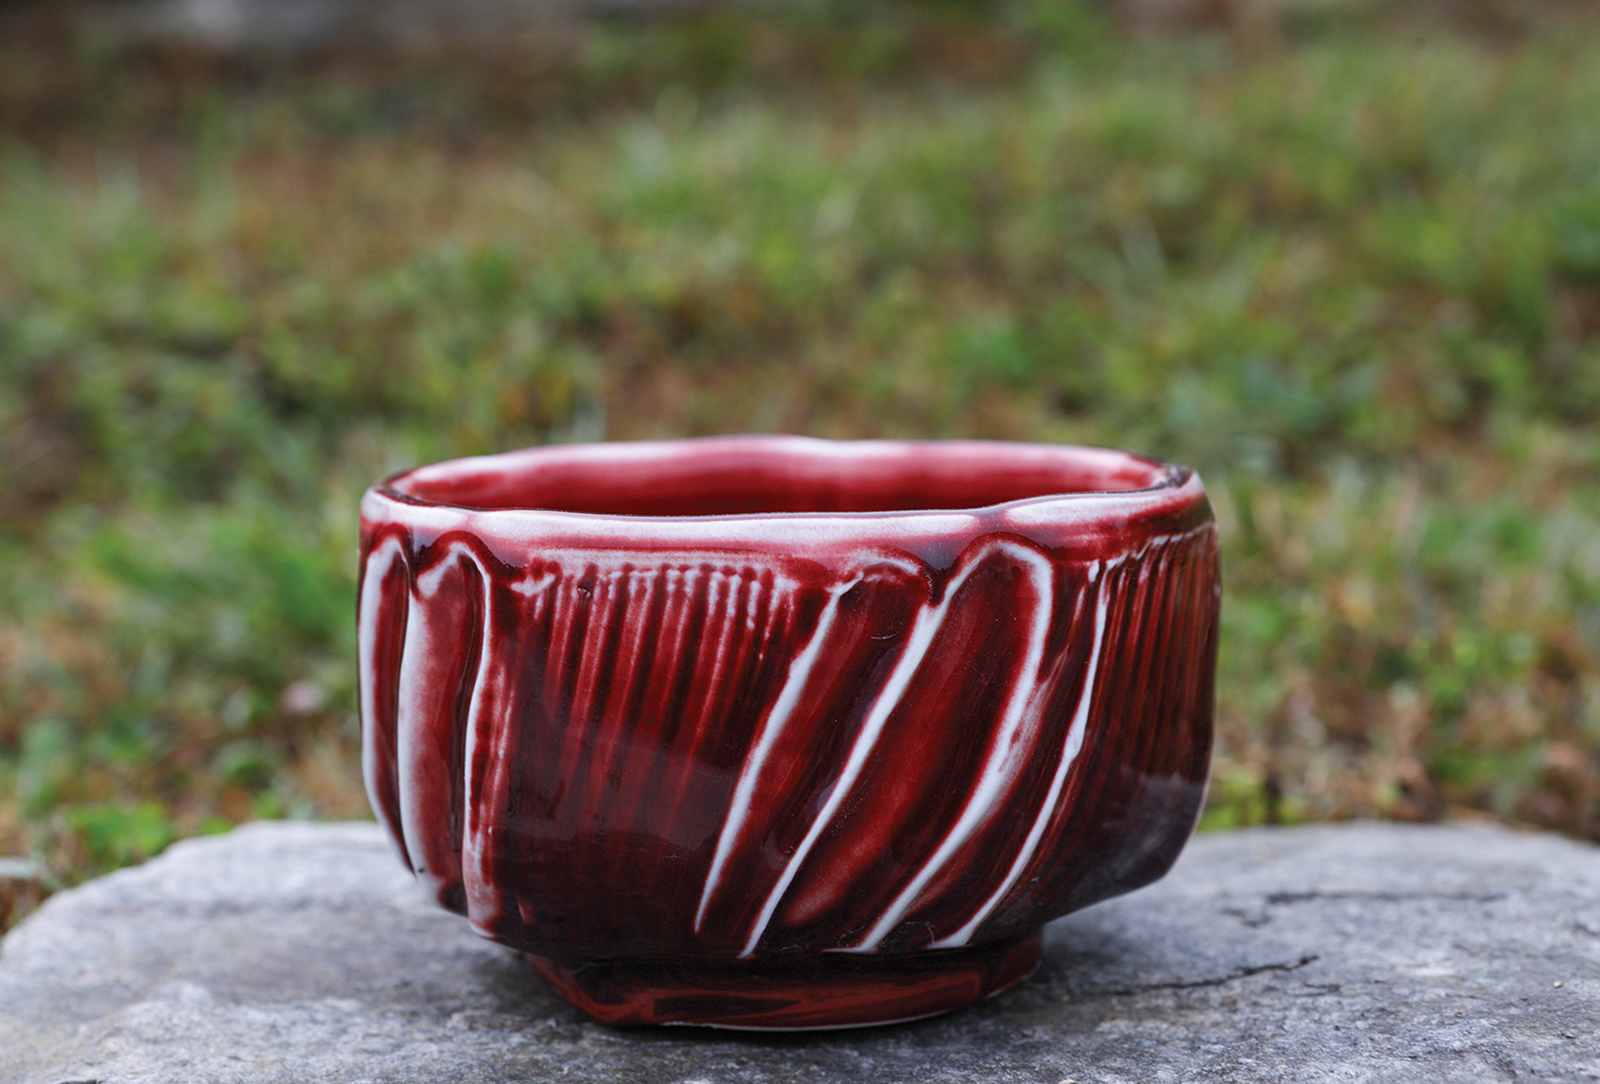 highlands nc bascom artist ceramic red bowl